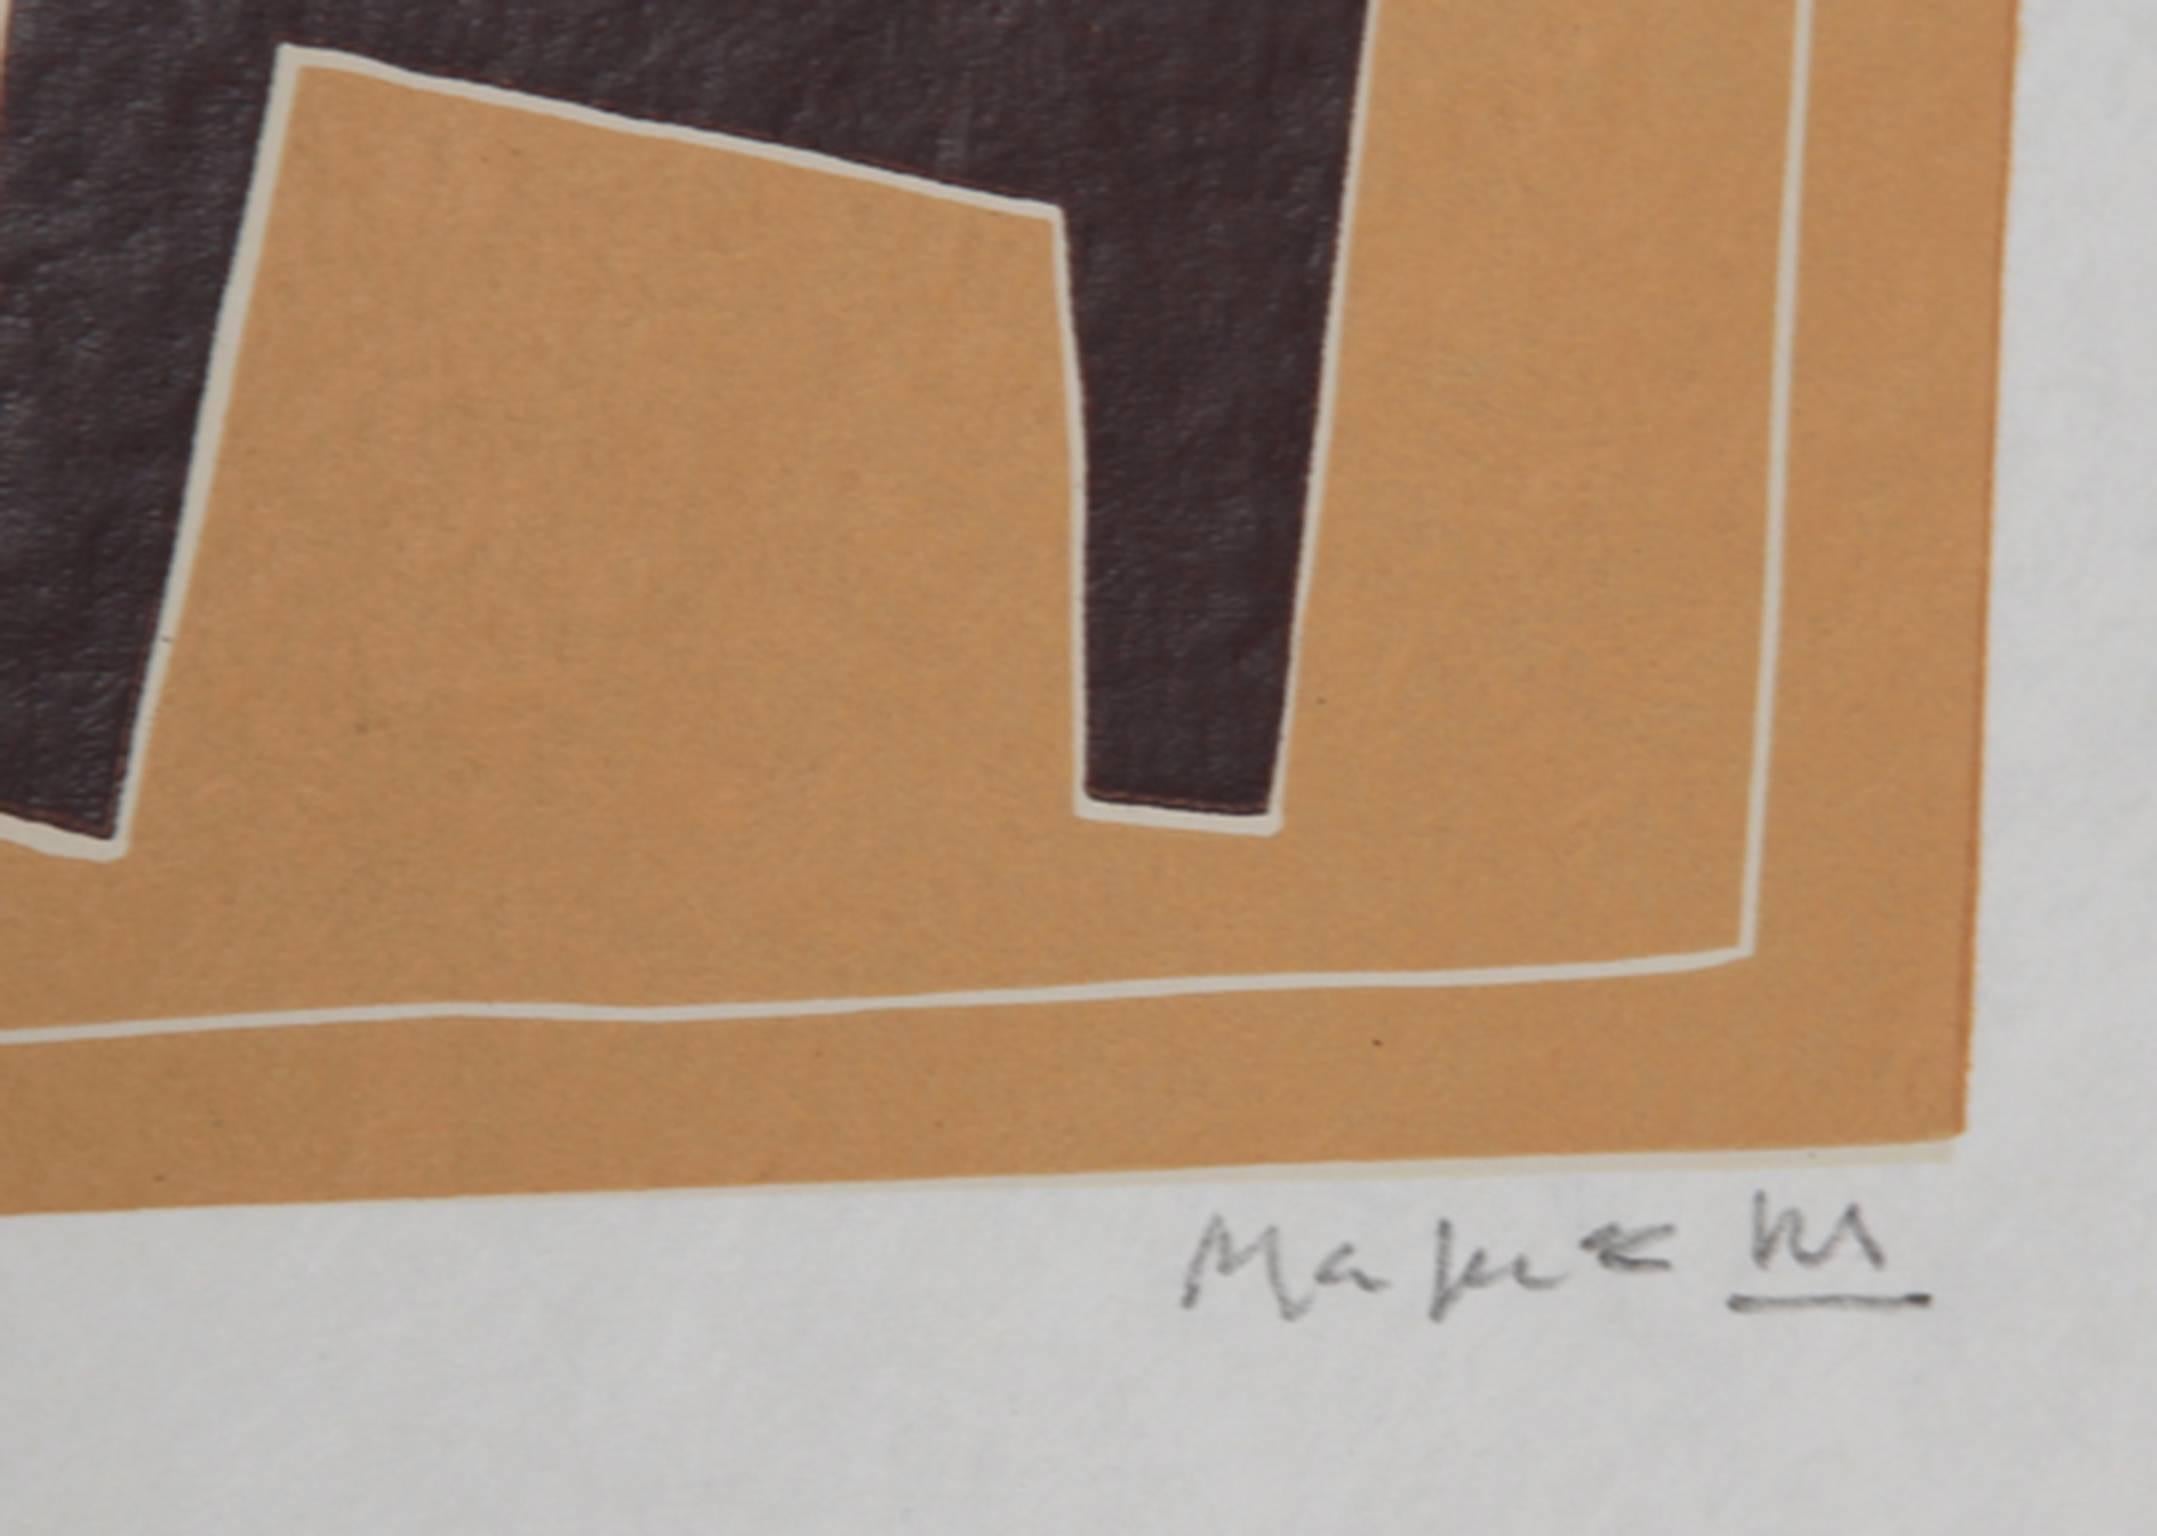 Artist: Alberto Magnelli, Italian (1888 - 1971)
Title: VI from La Magnanerie de la Ferrage
Year: 1971
Medium: Linocut on Japon, signed in pencil
Edition: Pour Leon Amiel
Image Size: 19.5 x 13.5 inches
Size: 25.5 in. x 20 in. (64.77 cm x 50.8